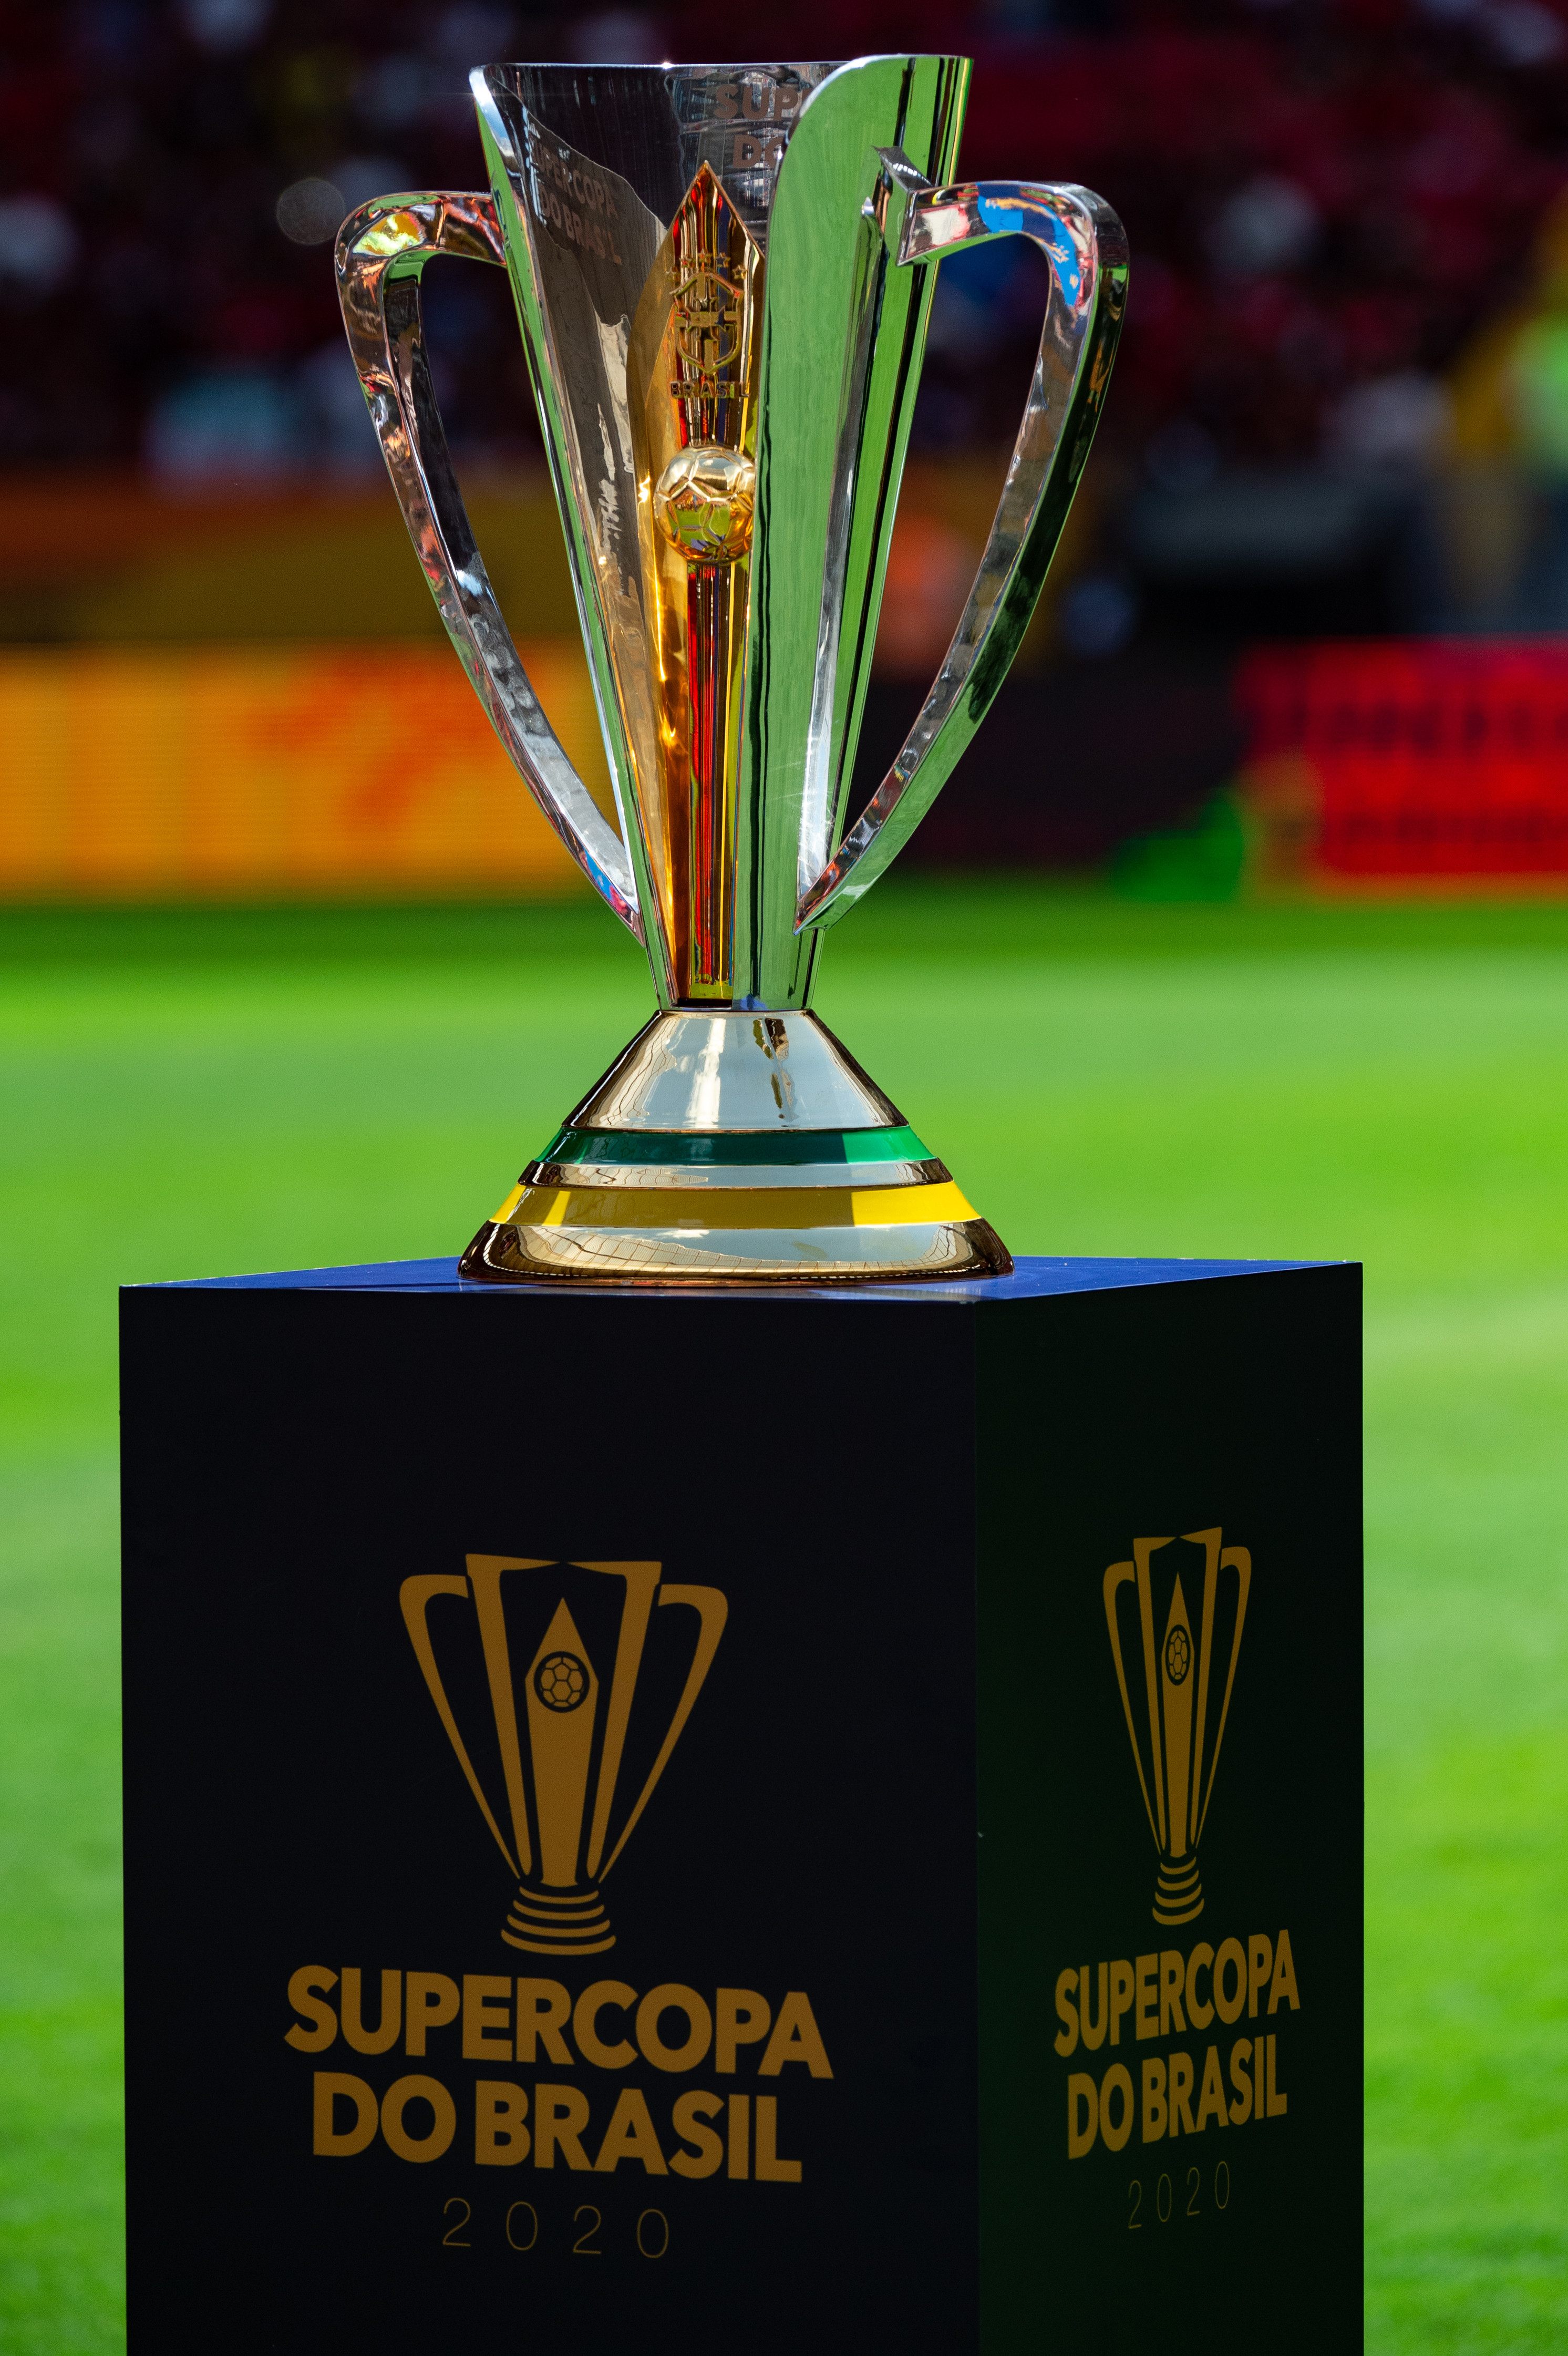 Supercopa do Brasil 2020